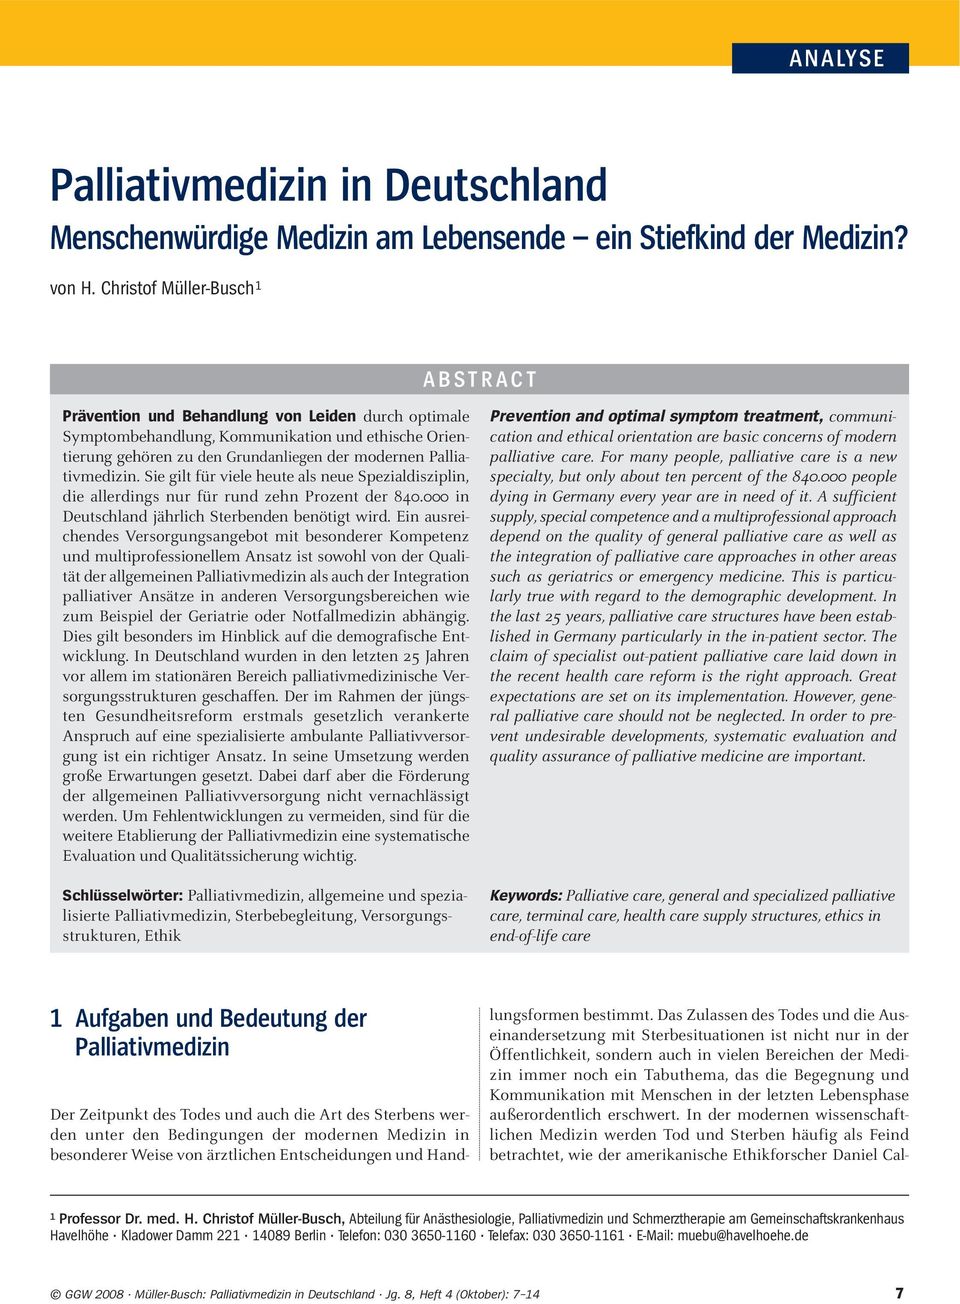 Palliativmedizin. Sie gilt für viele heute als neue Spezialdisziplin, die allerdings nur für rund zehn Prozent der 840.000 in Deutschland jährlich Sterbenden benötigt wird.